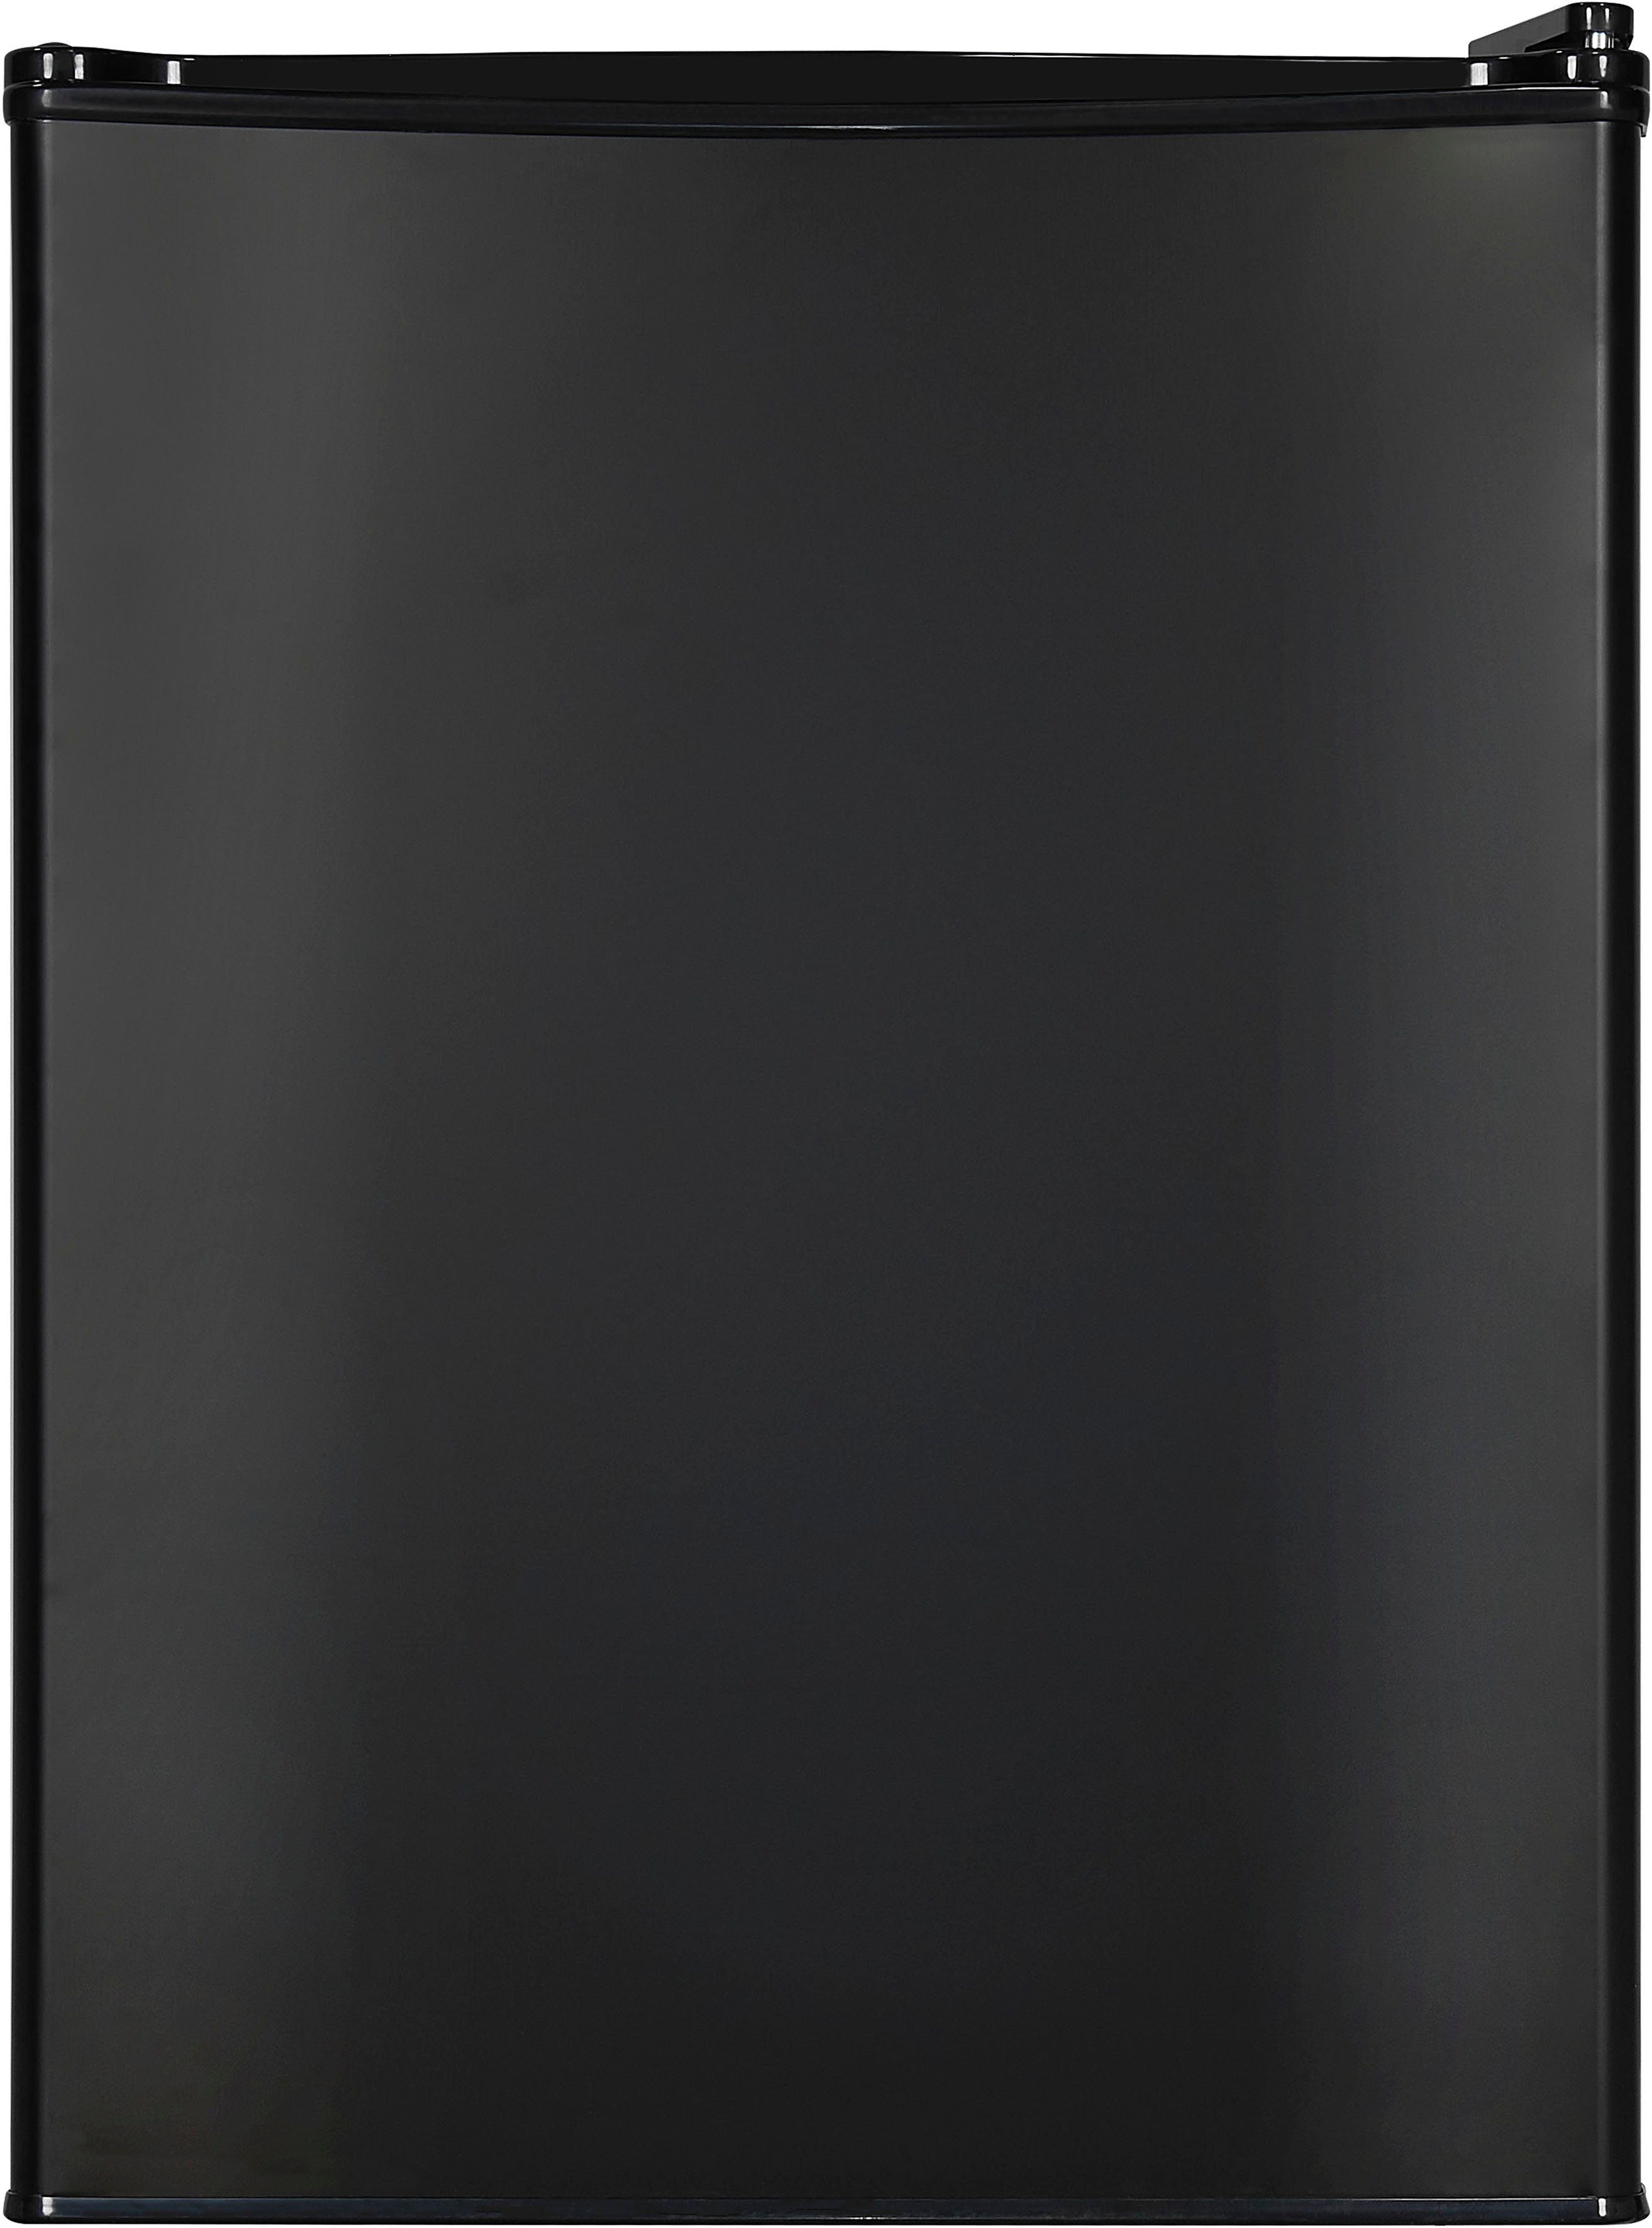 exquisit KB60-V-090E cm schwarz, Kühlschrank 62 hoch, breit cm 45